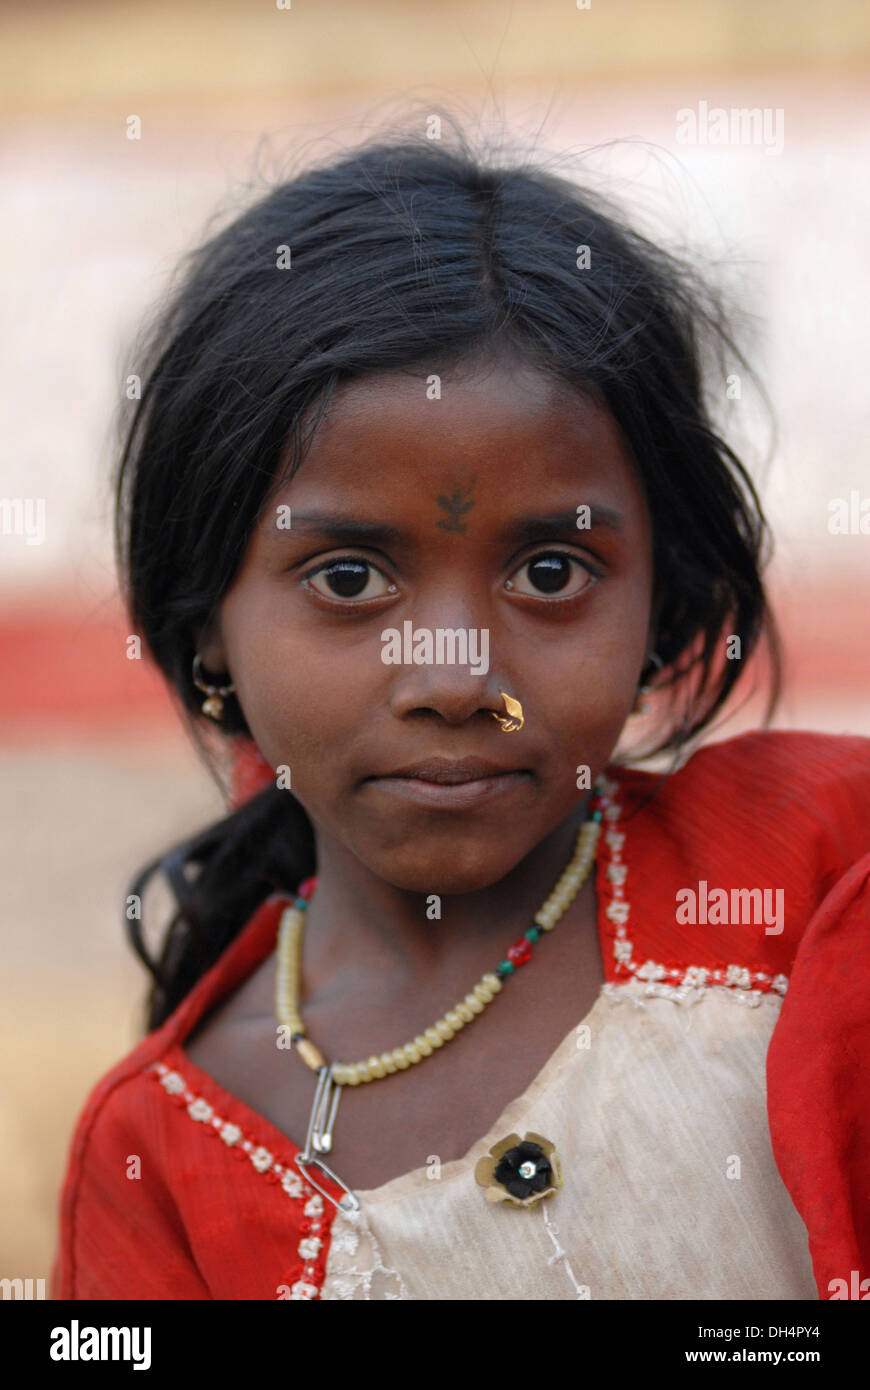 File:Indian girl, Raisen district, Madhya Pradesh.jpg 